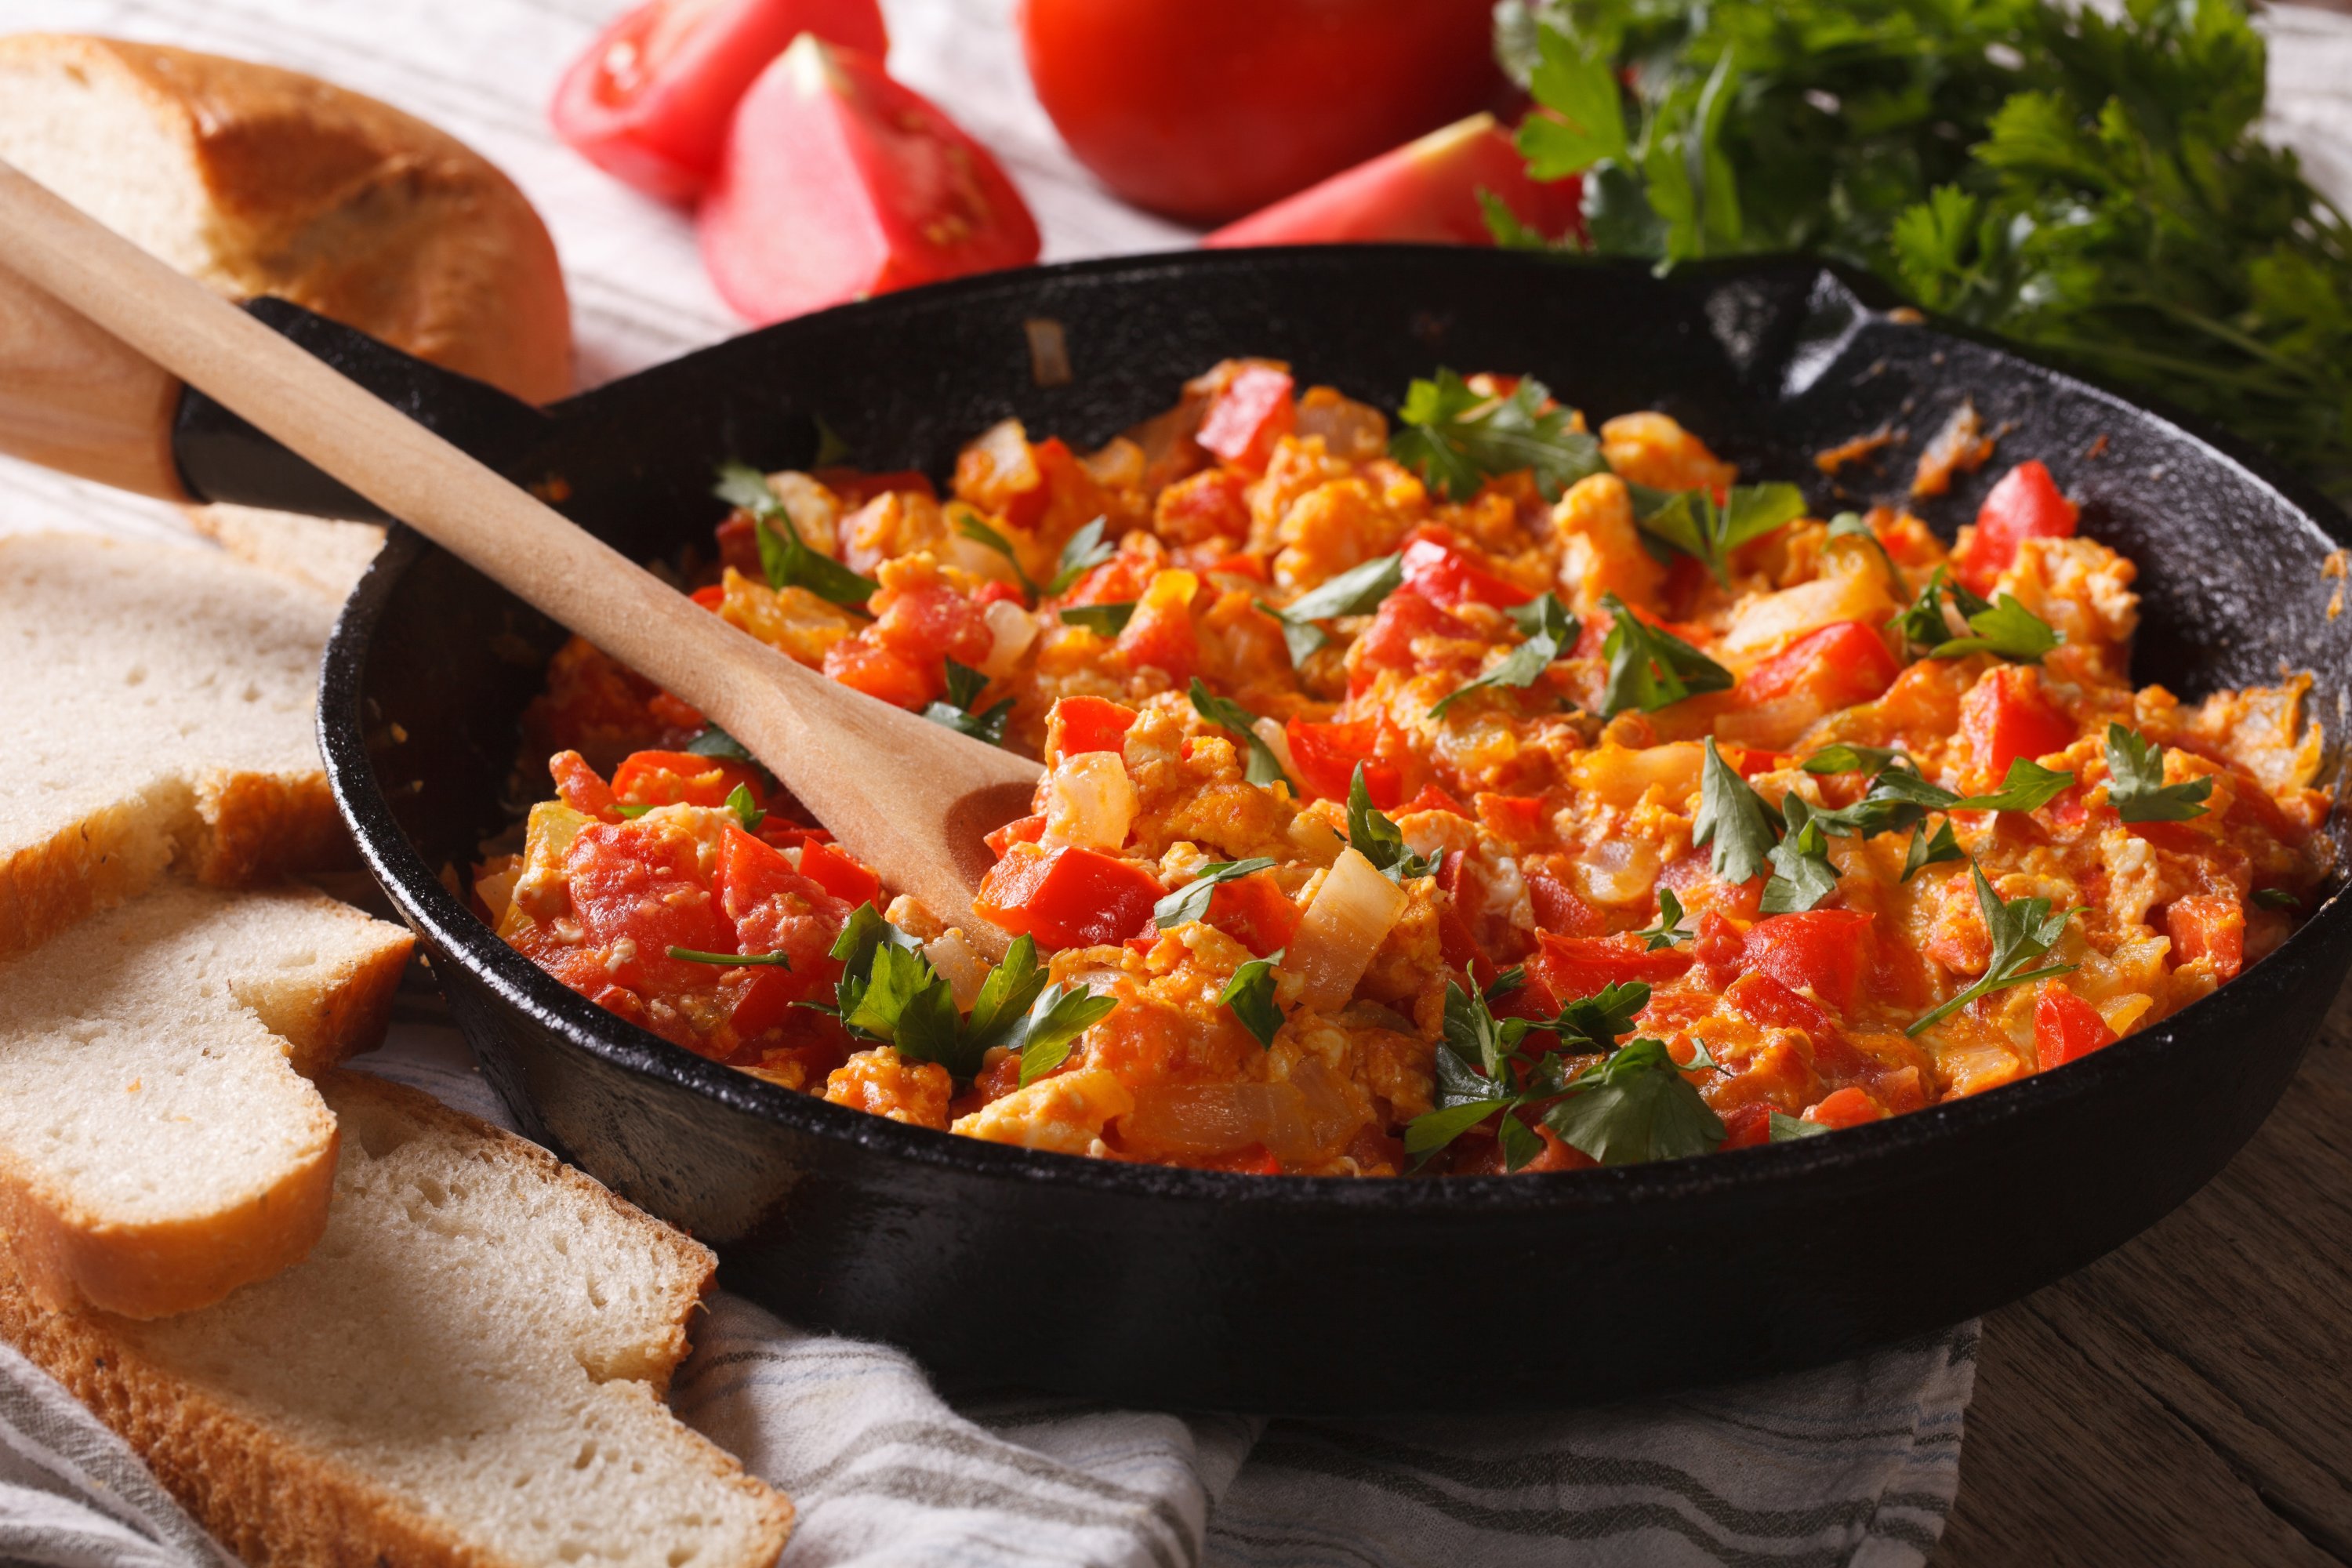 Turkish scrambled eggs with vegetables, menemen. (Shutterstock Photo) 